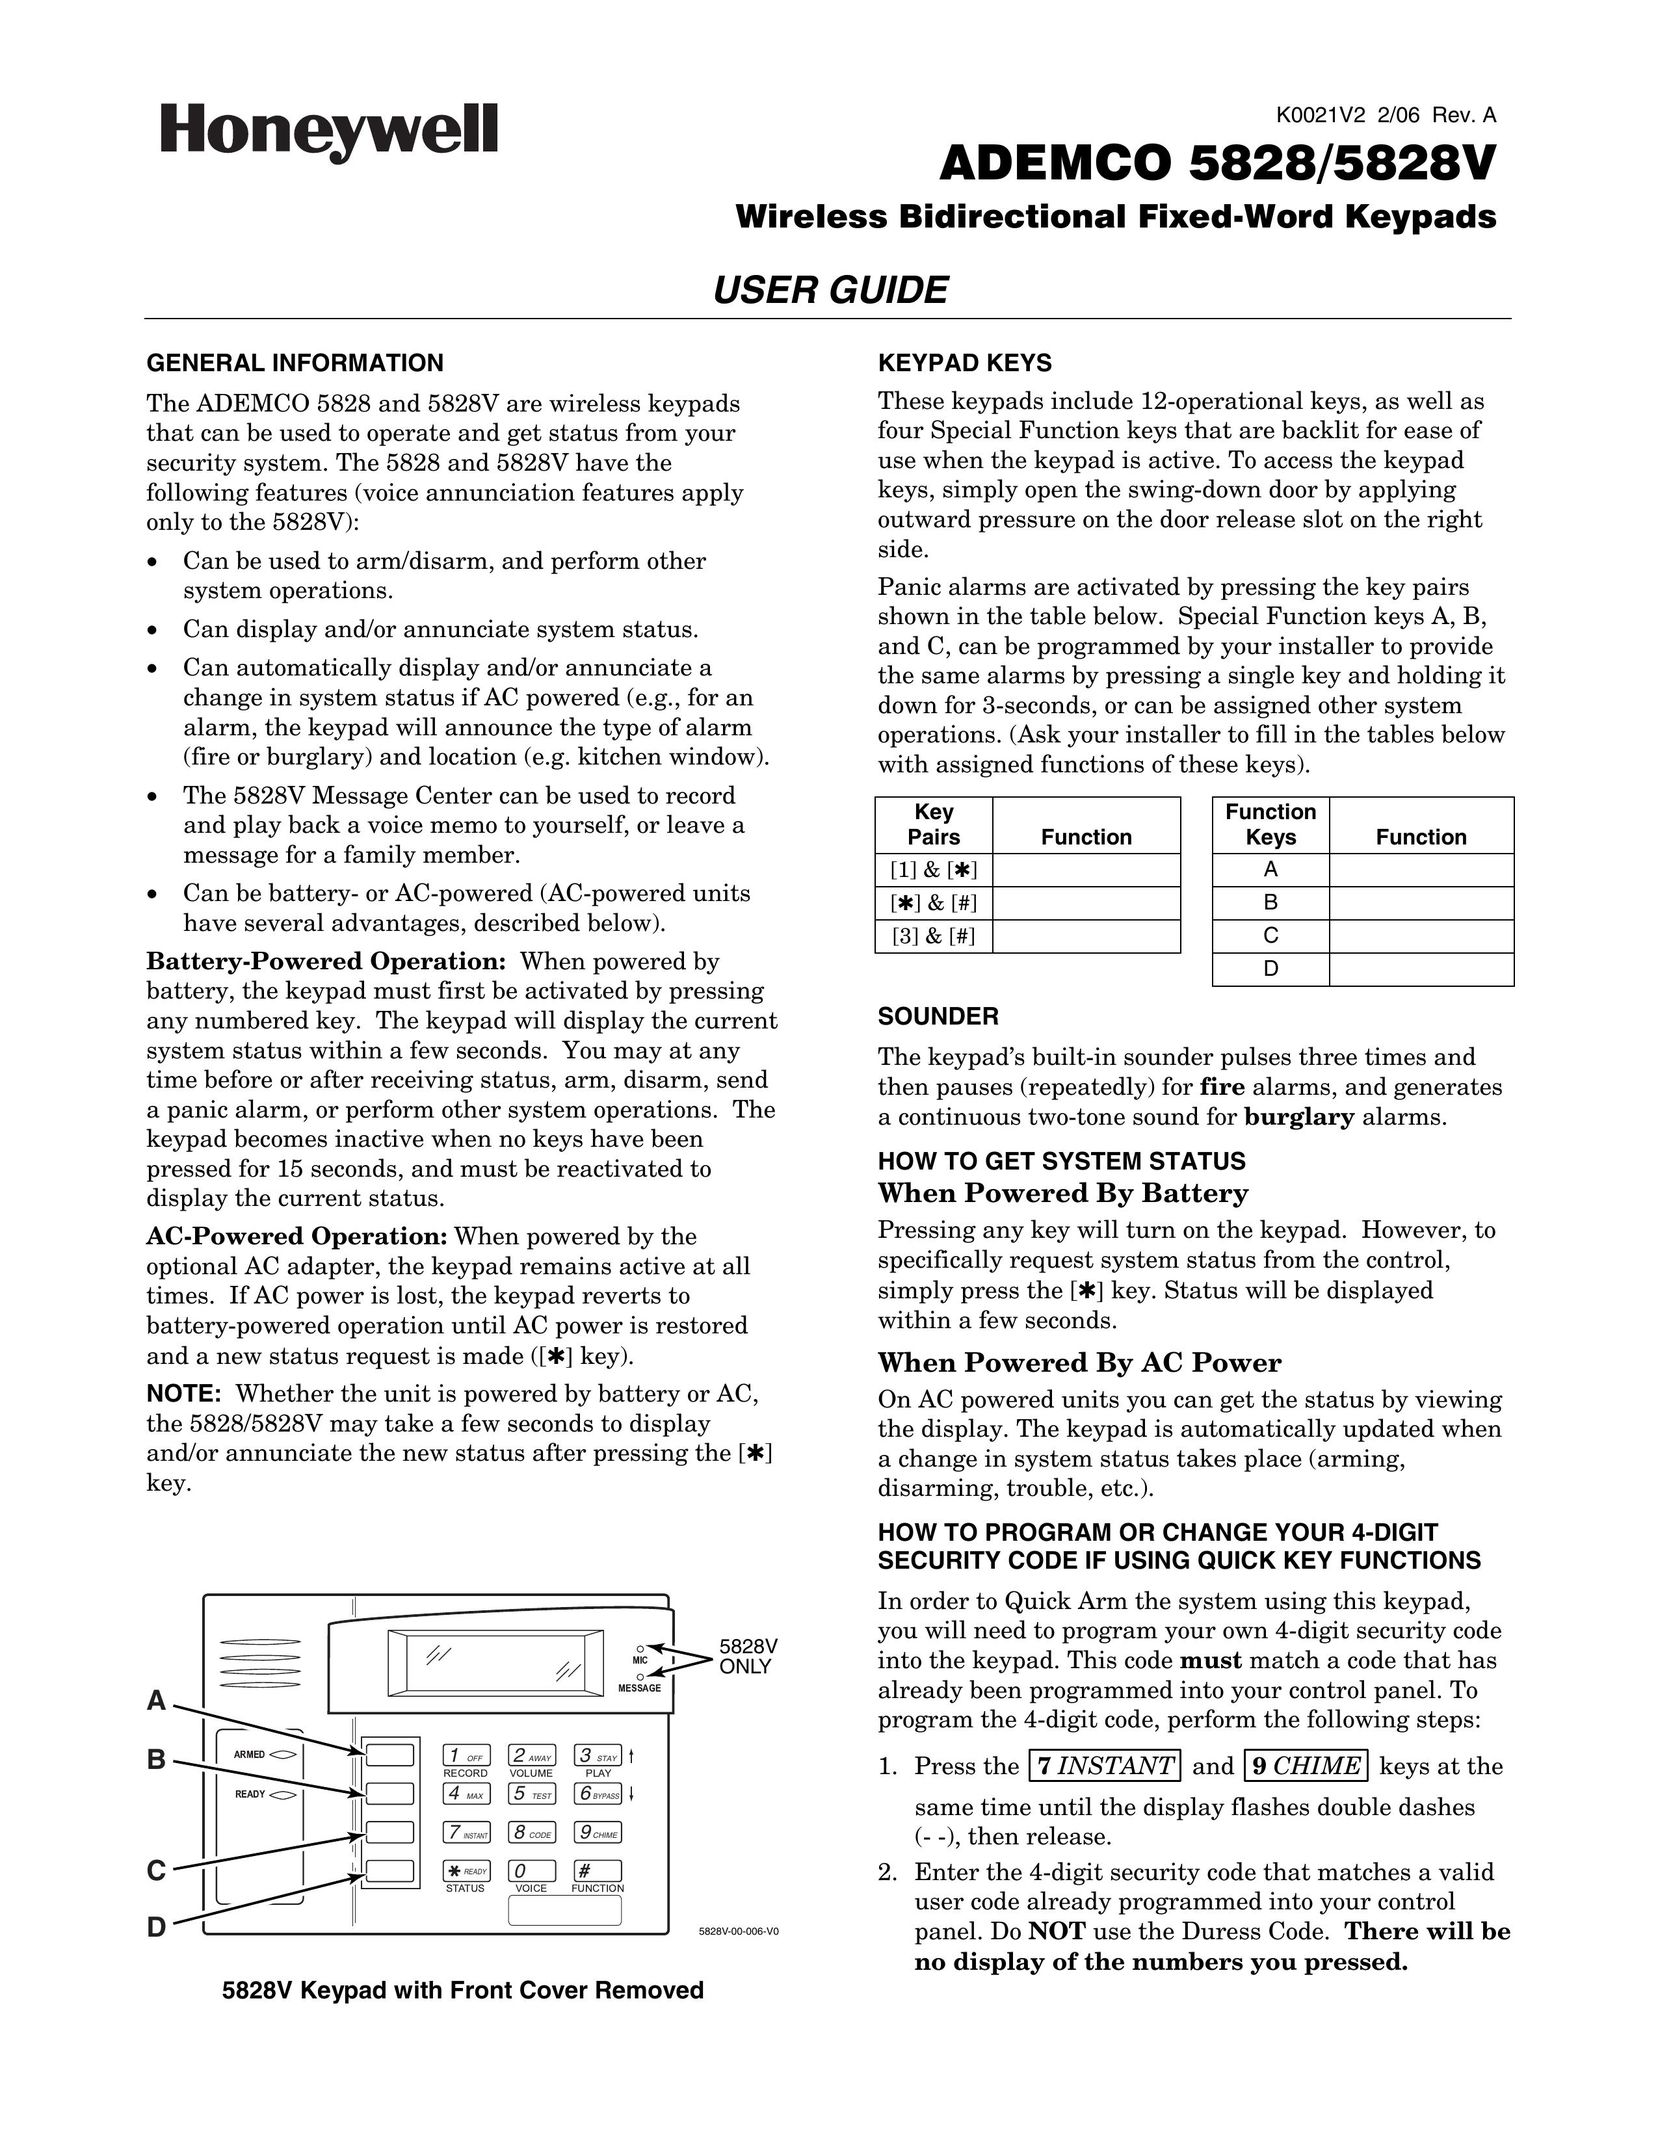 Honeywell 5828/5828V Garage Door Opener User Manual